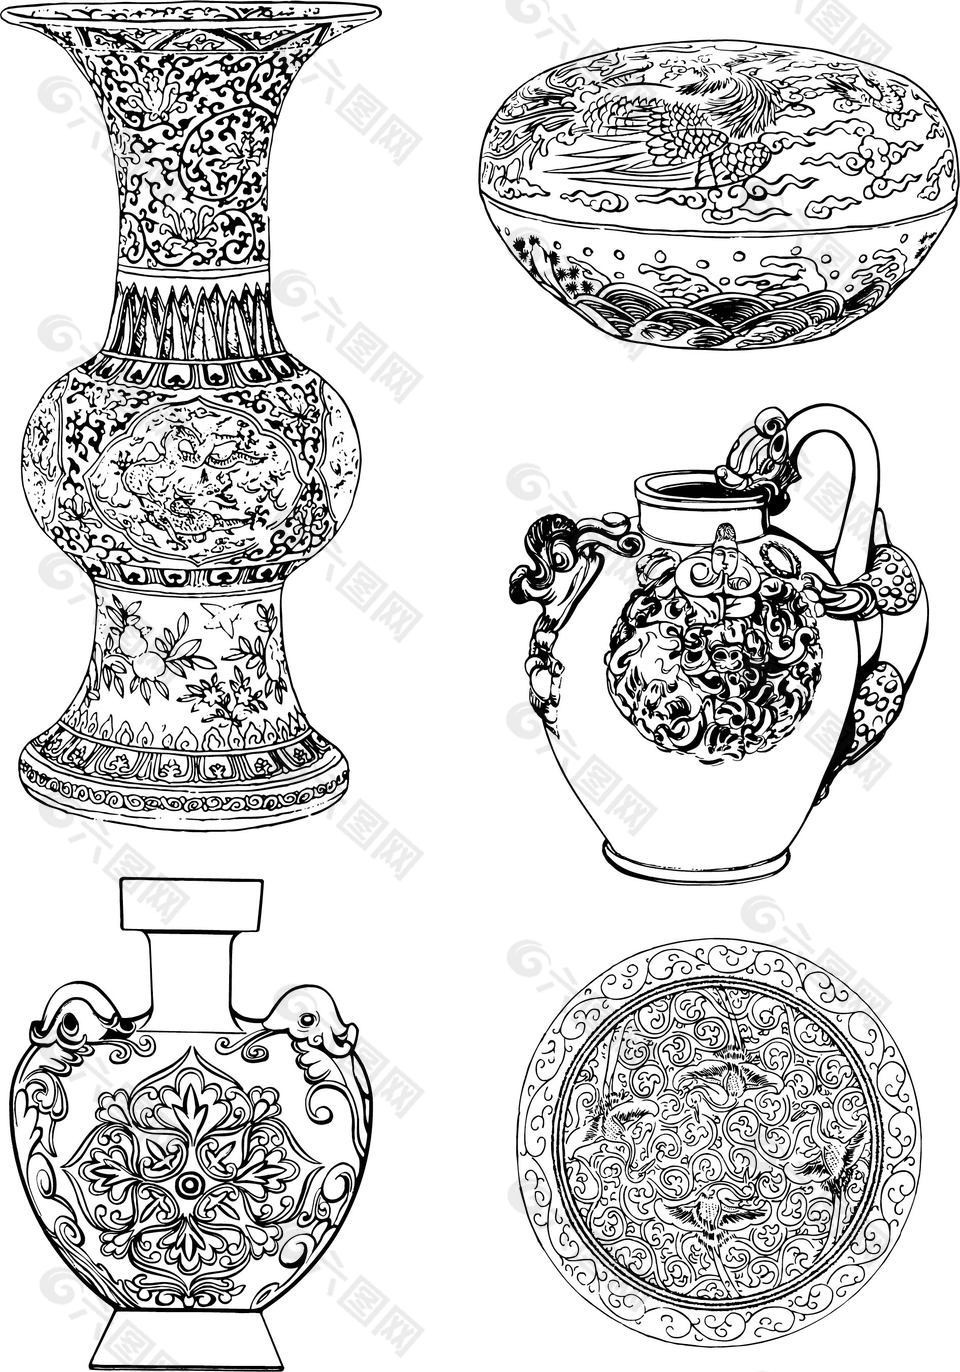 中国瓷器传统纹样图